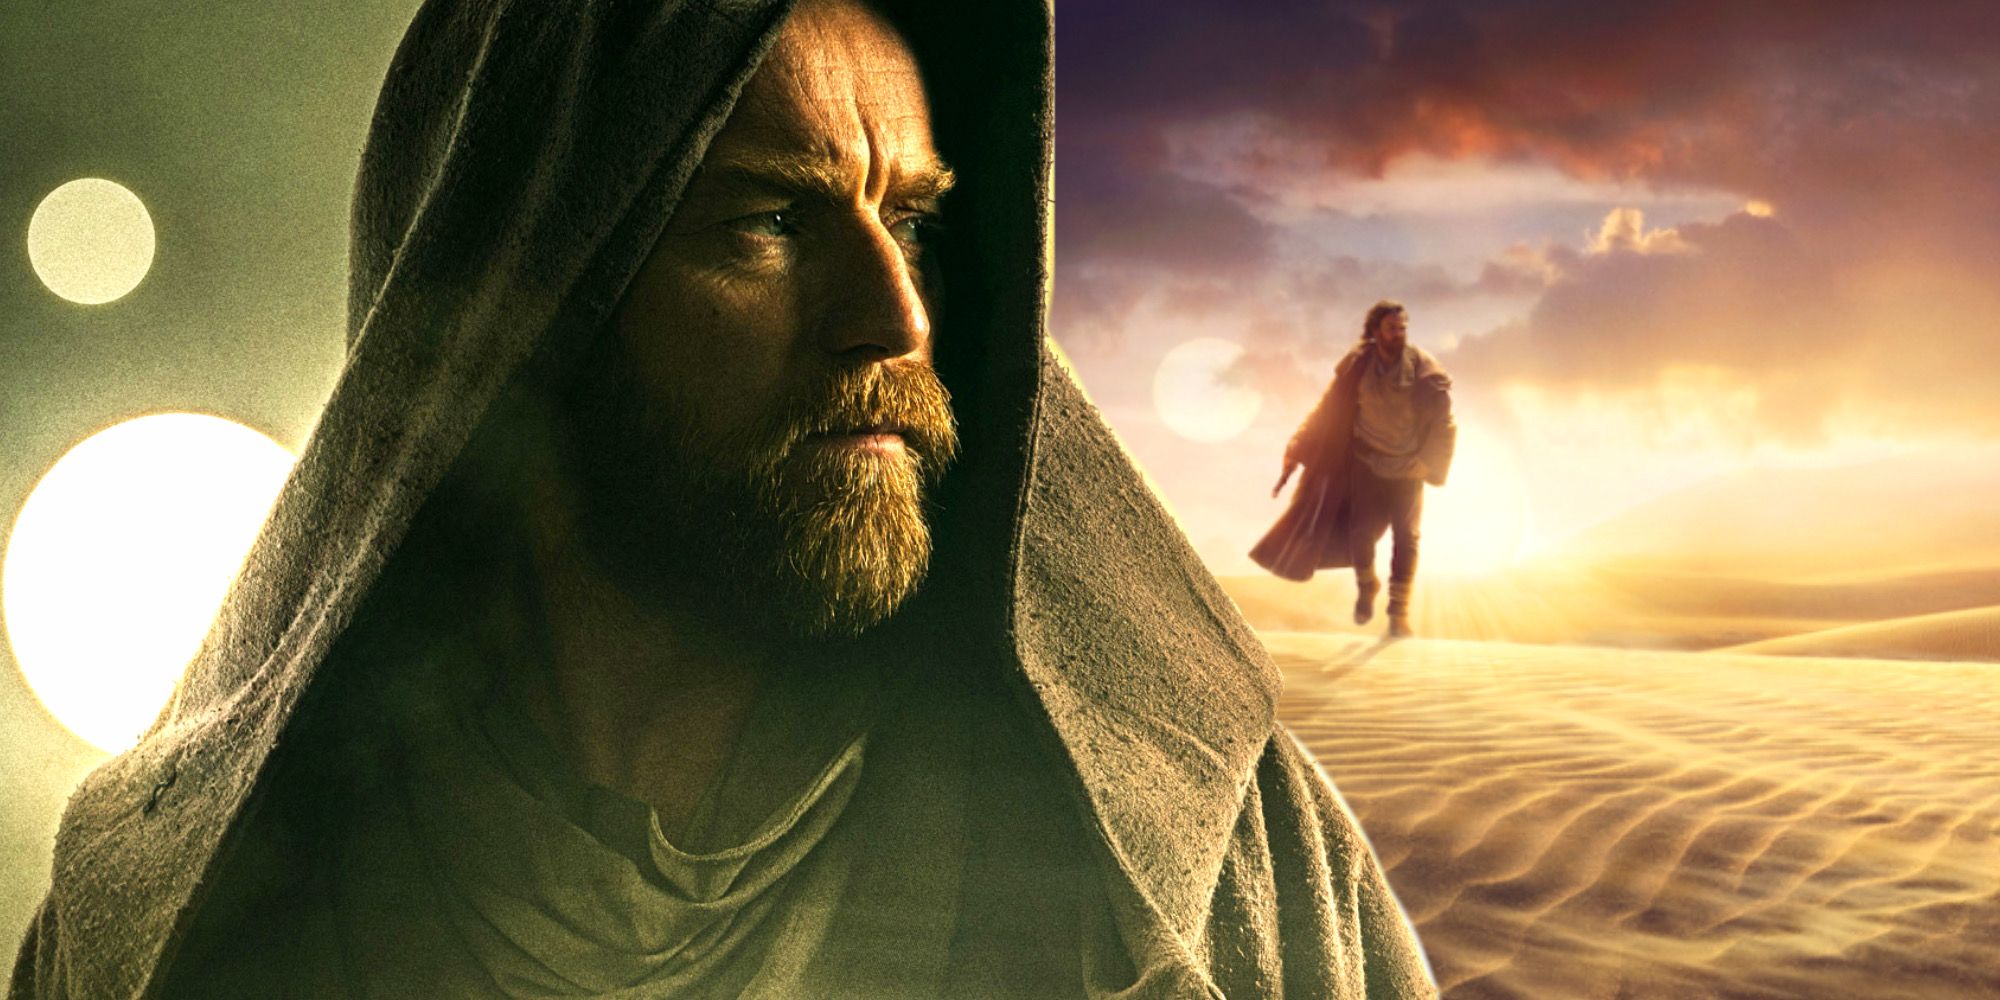 Ewan McGregor Returns As Obi-Wan Kenobi In Both Promotional Posters